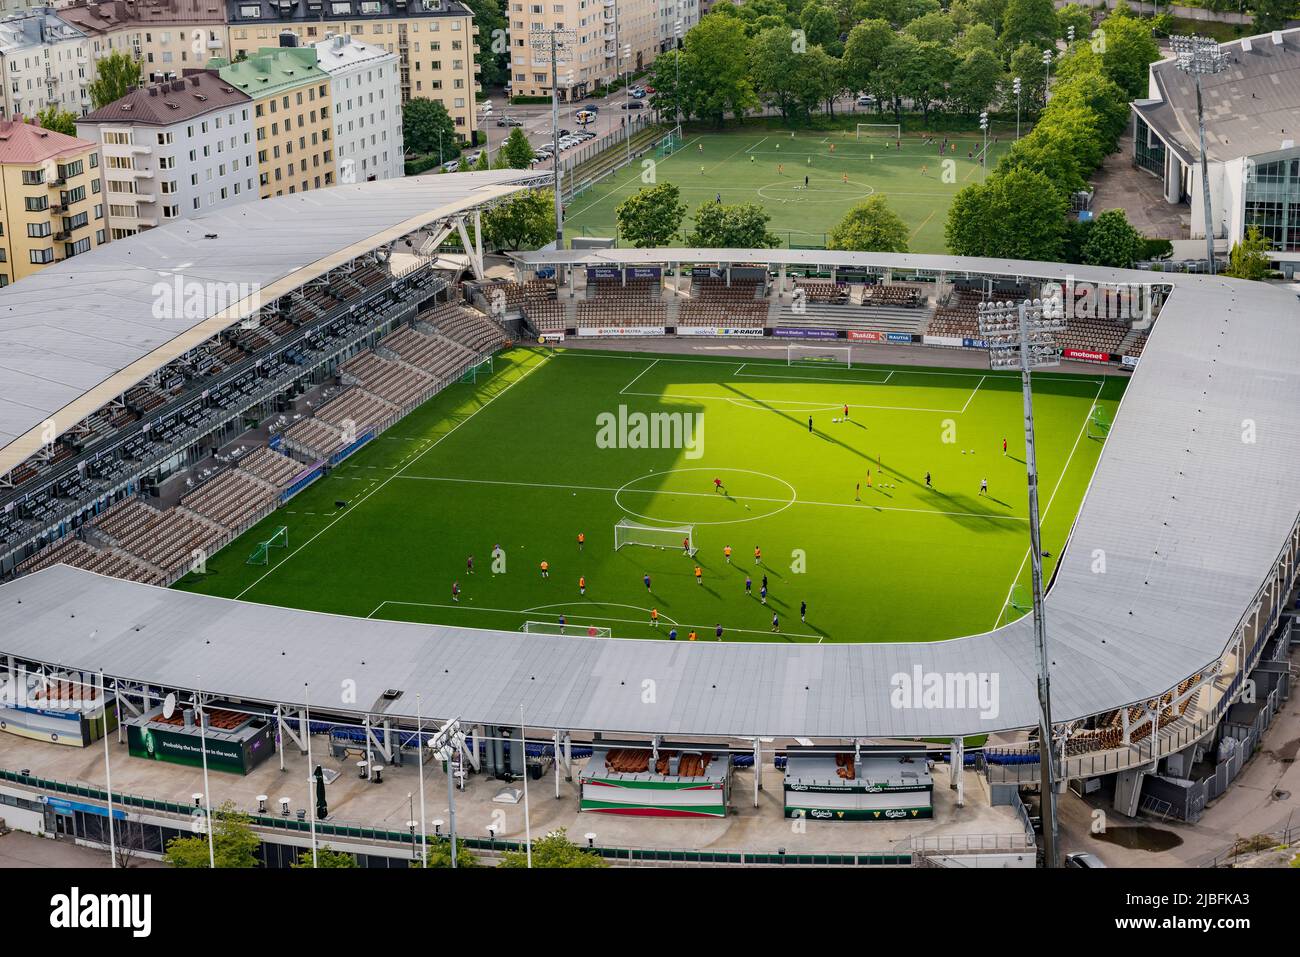 Stadium in Helsinki, Finland Stock Photo